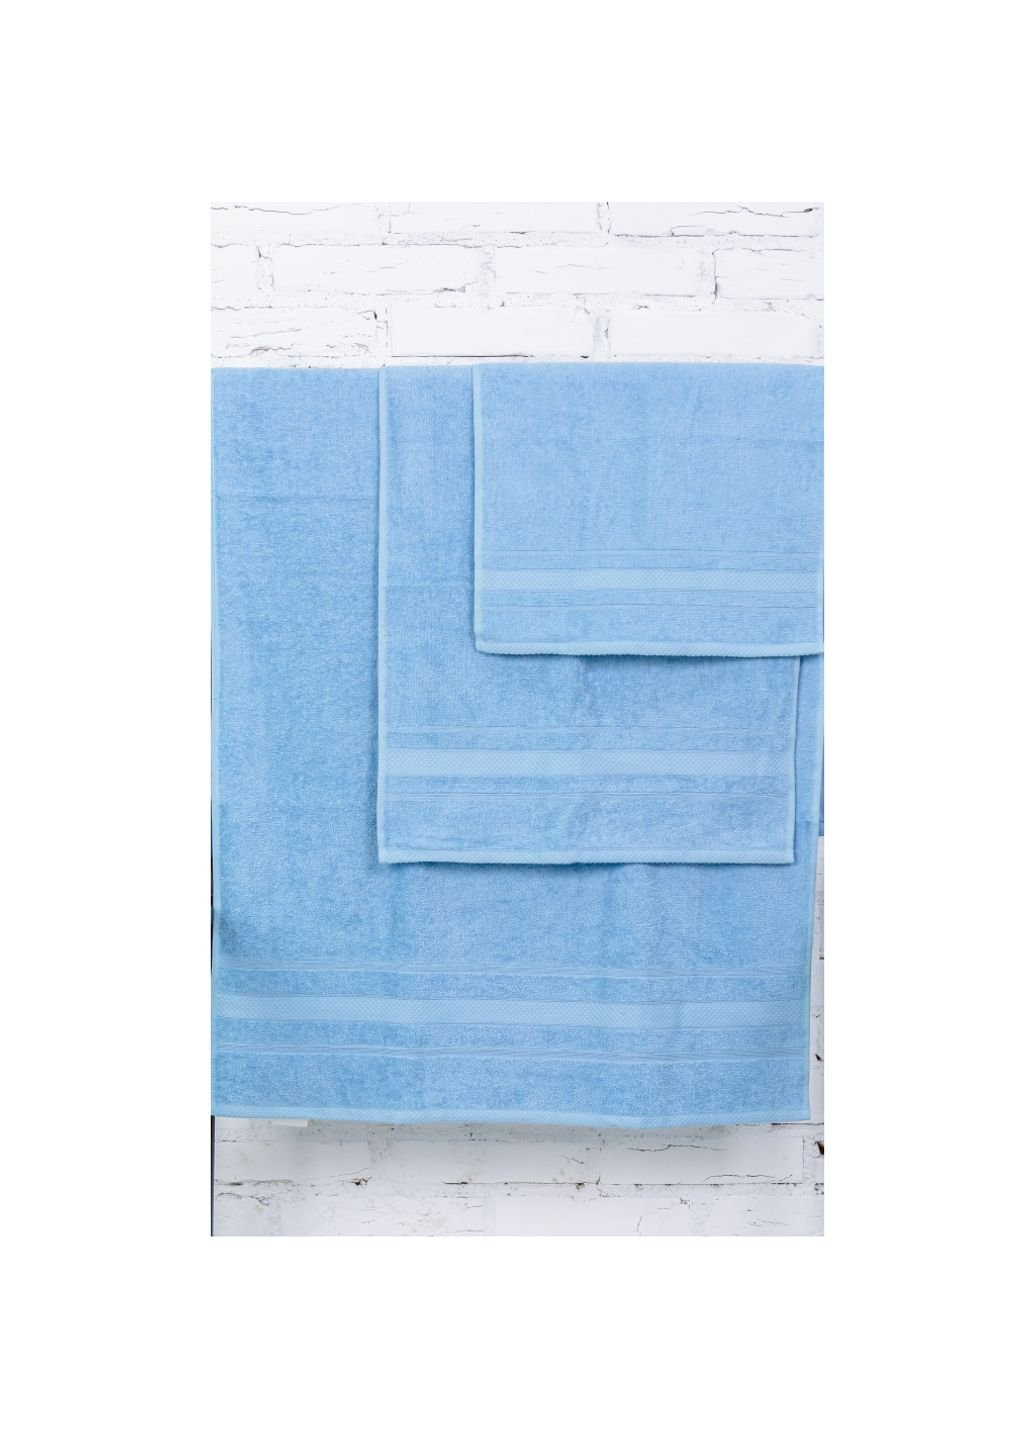 Mirson полотенце набор банных №5072 elite softness cornflower 50х90, 70х140, (2200003960921) голубой производство - Украина